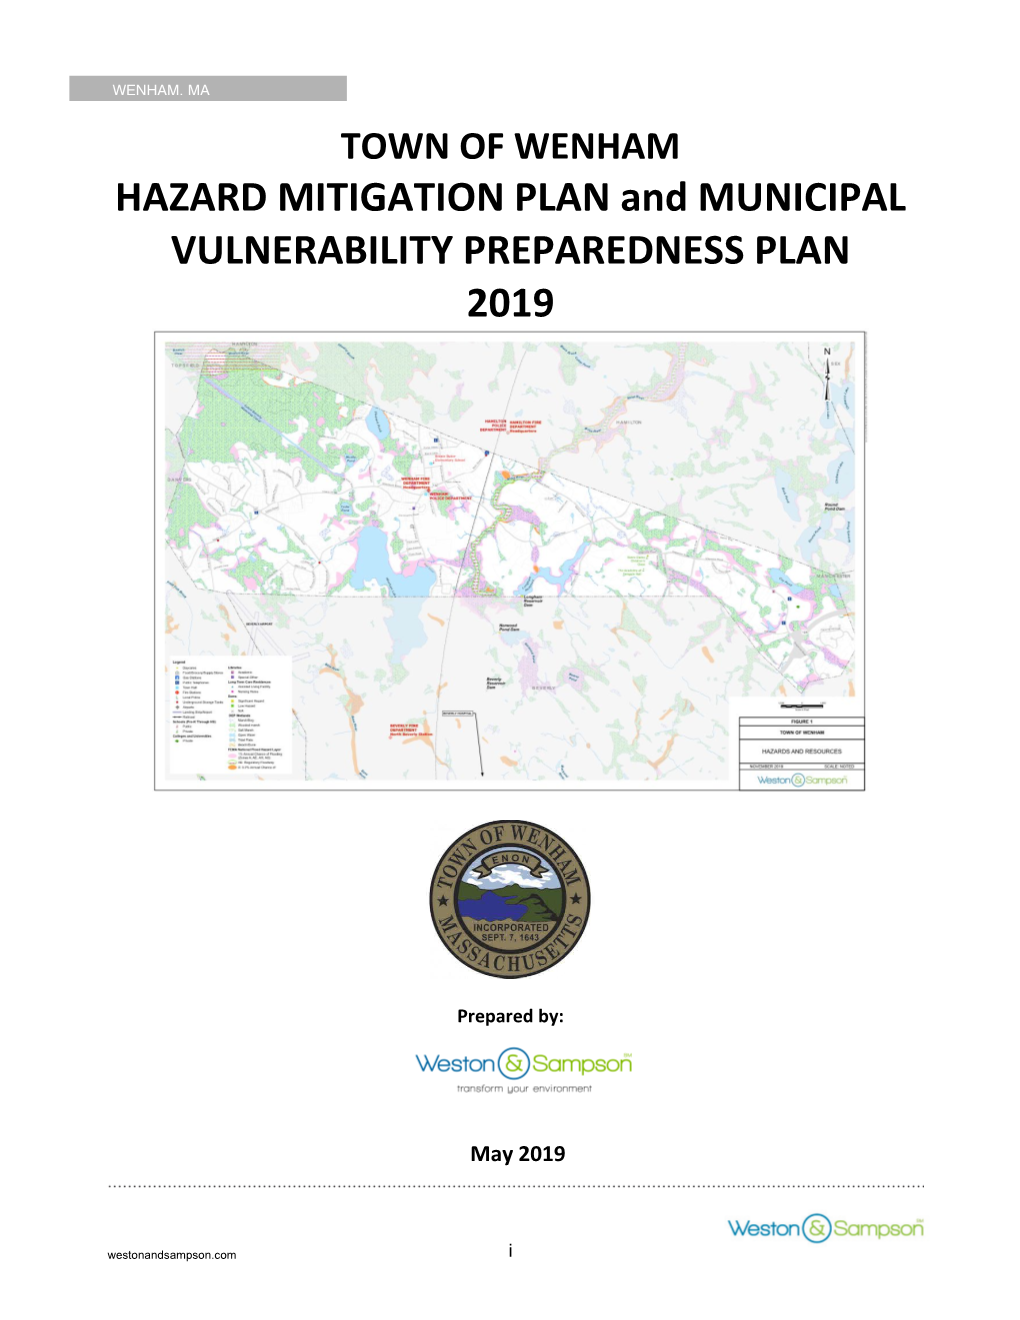 TOWN of WENHAM HAZARD MITIGATION PLAN and MUNICIPAL VULNERABILITY PREPAREDNESS PLAN 2019